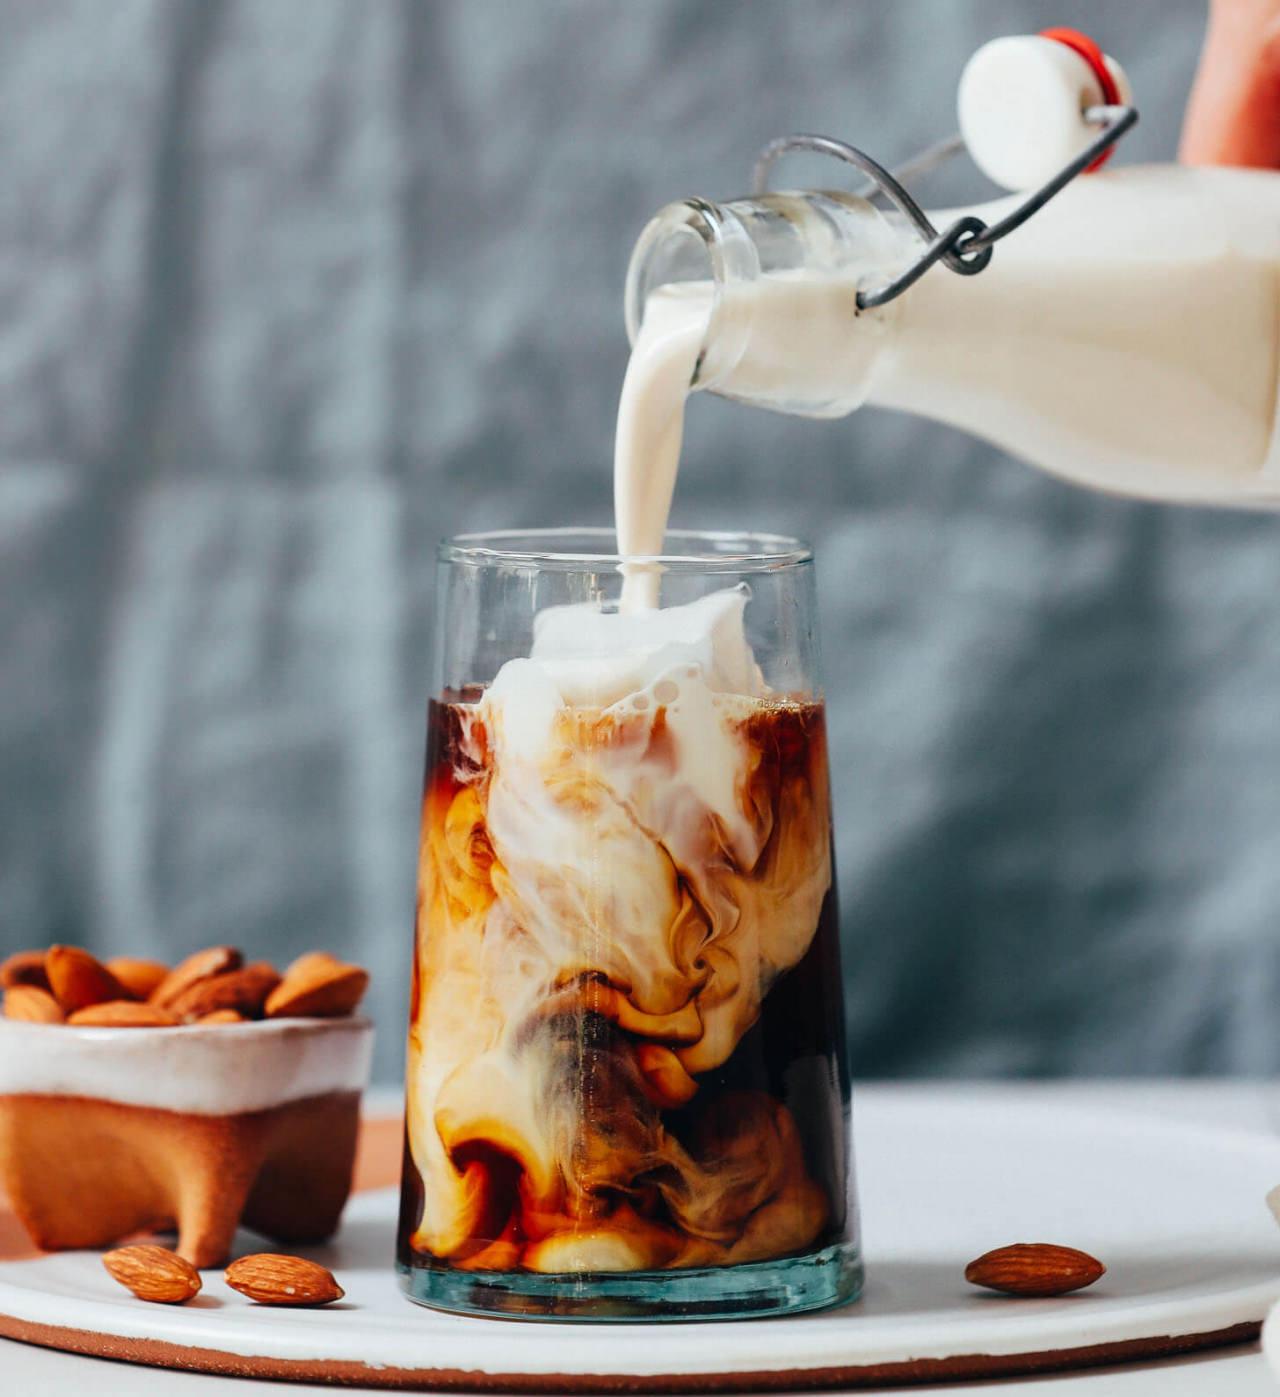 İçmeye doyamayacağınız enfes kahveleri evde yapın! Ev yapımı vanilyalı kahve kreması tarifi, nasıl yapılır?